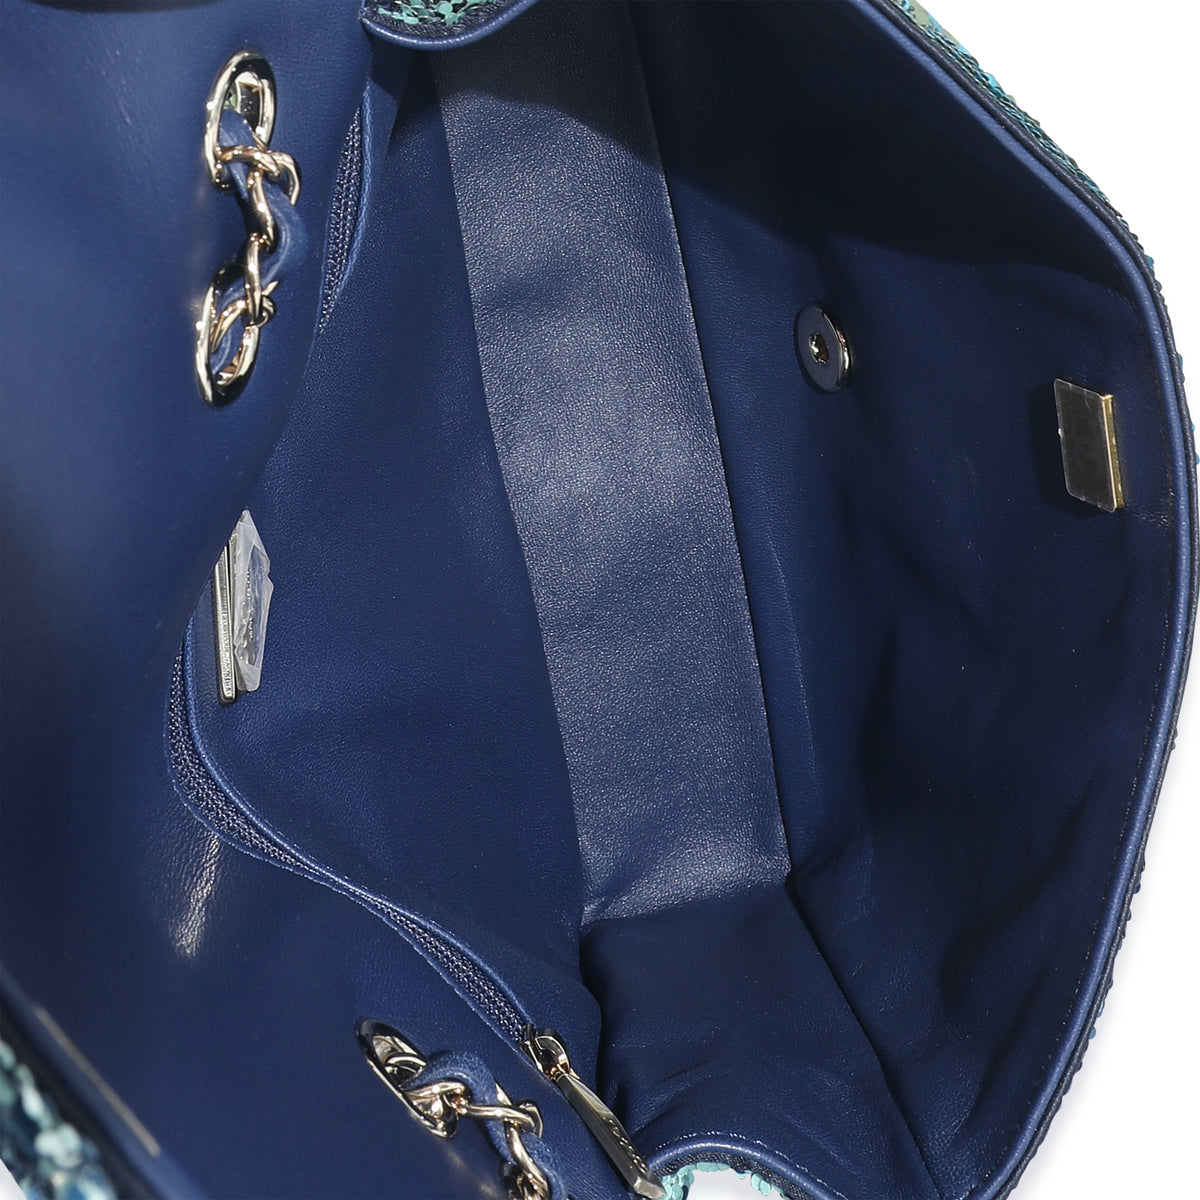 chanel handbag blue navy